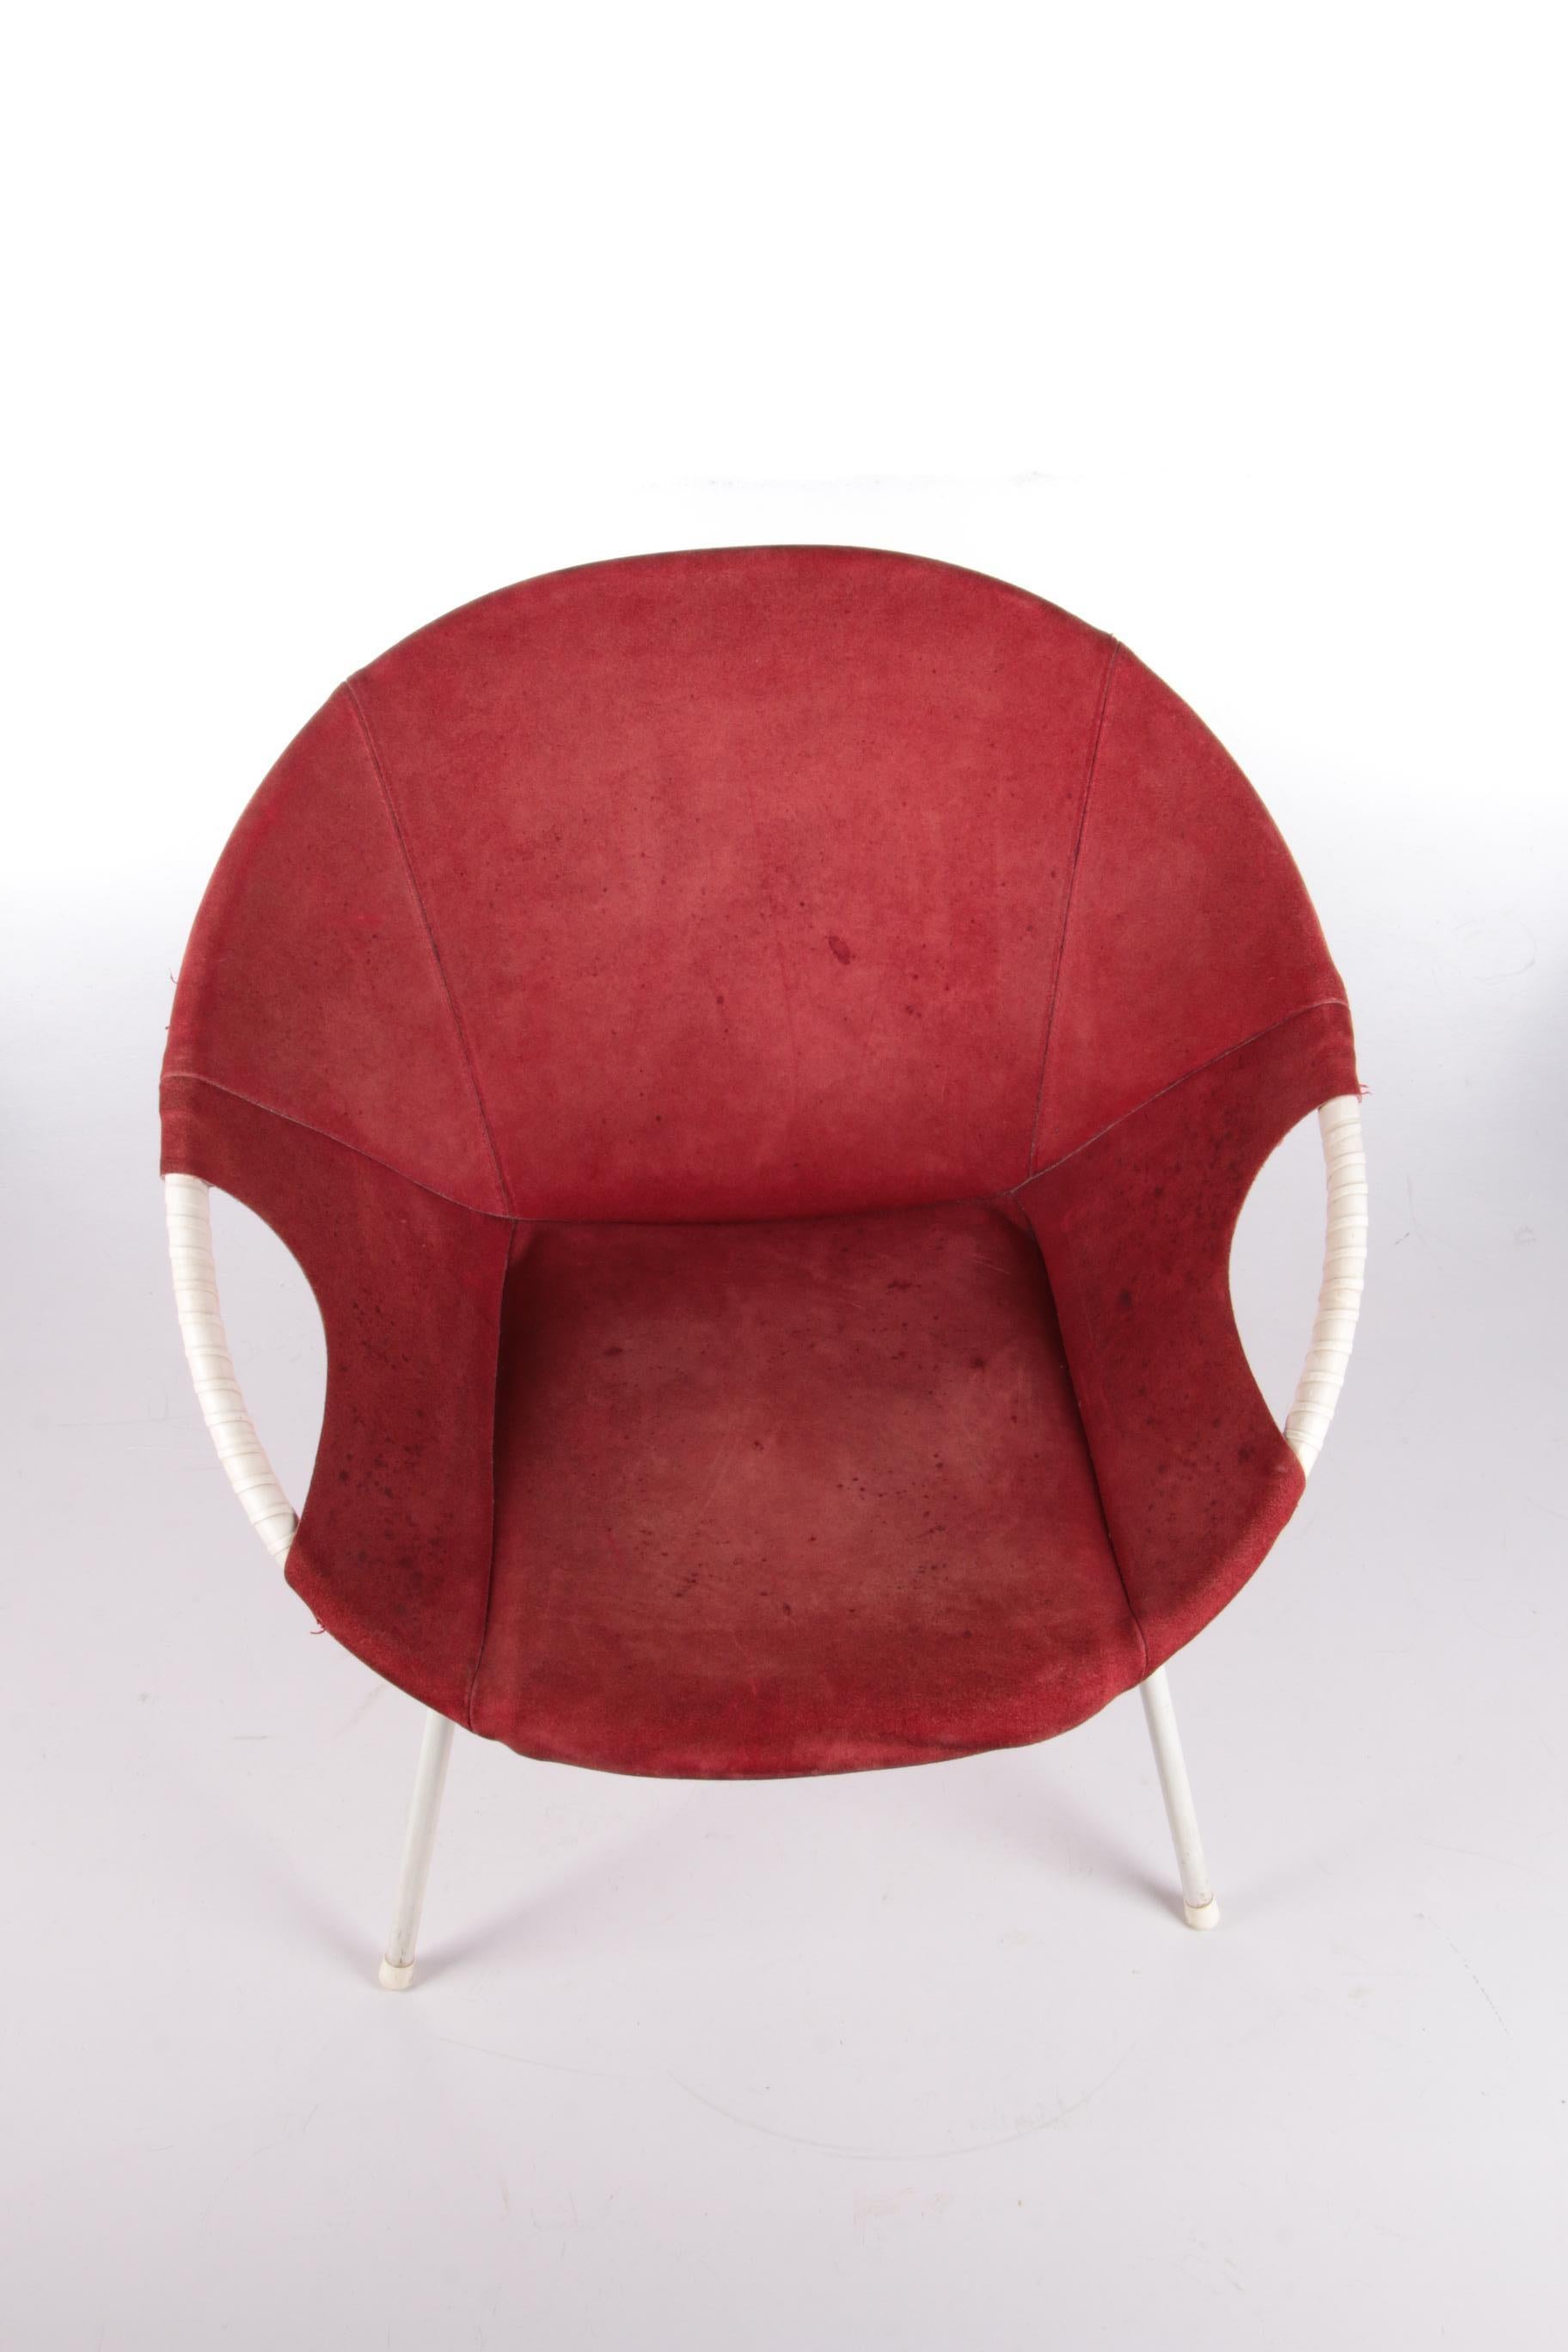 Vintage Balloon Chair Design by Lusch Erzeugnis, 1960s 1